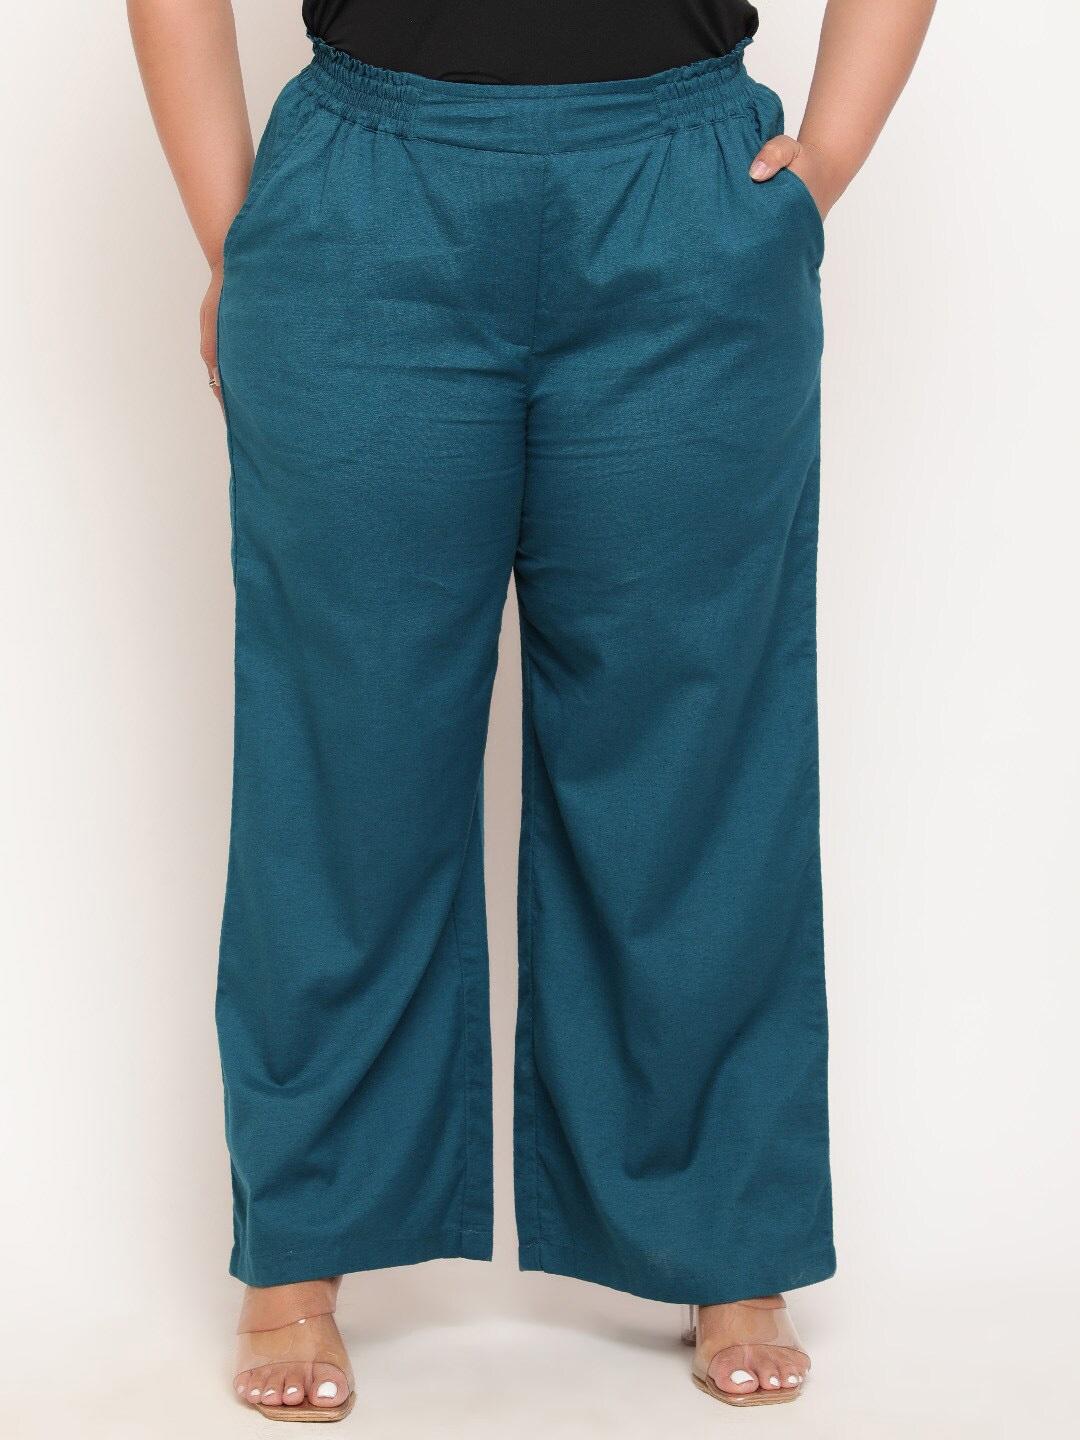 amydus women plus size high-rise parallel cotton linen trousers